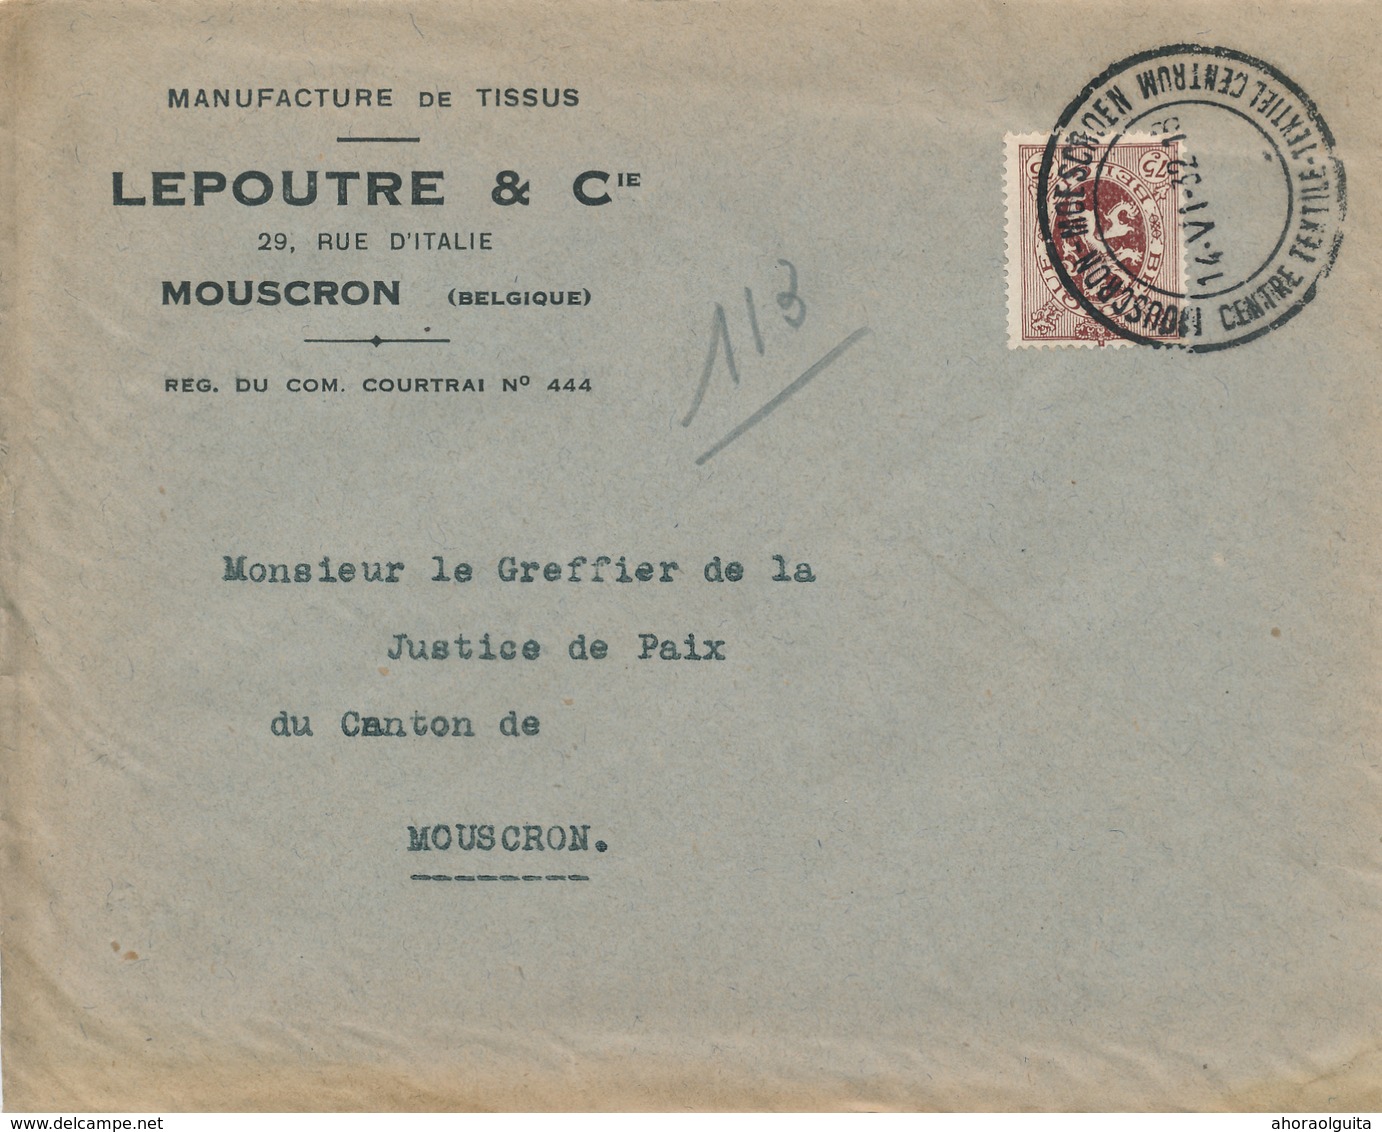 900/28 - Lettre + Contenu TP Lion Héraldique MOUSCRON MOESCROEN 1932 - Entete Manufacture De Tissus Lepoutre - 1929-1937 Lion Héraldique